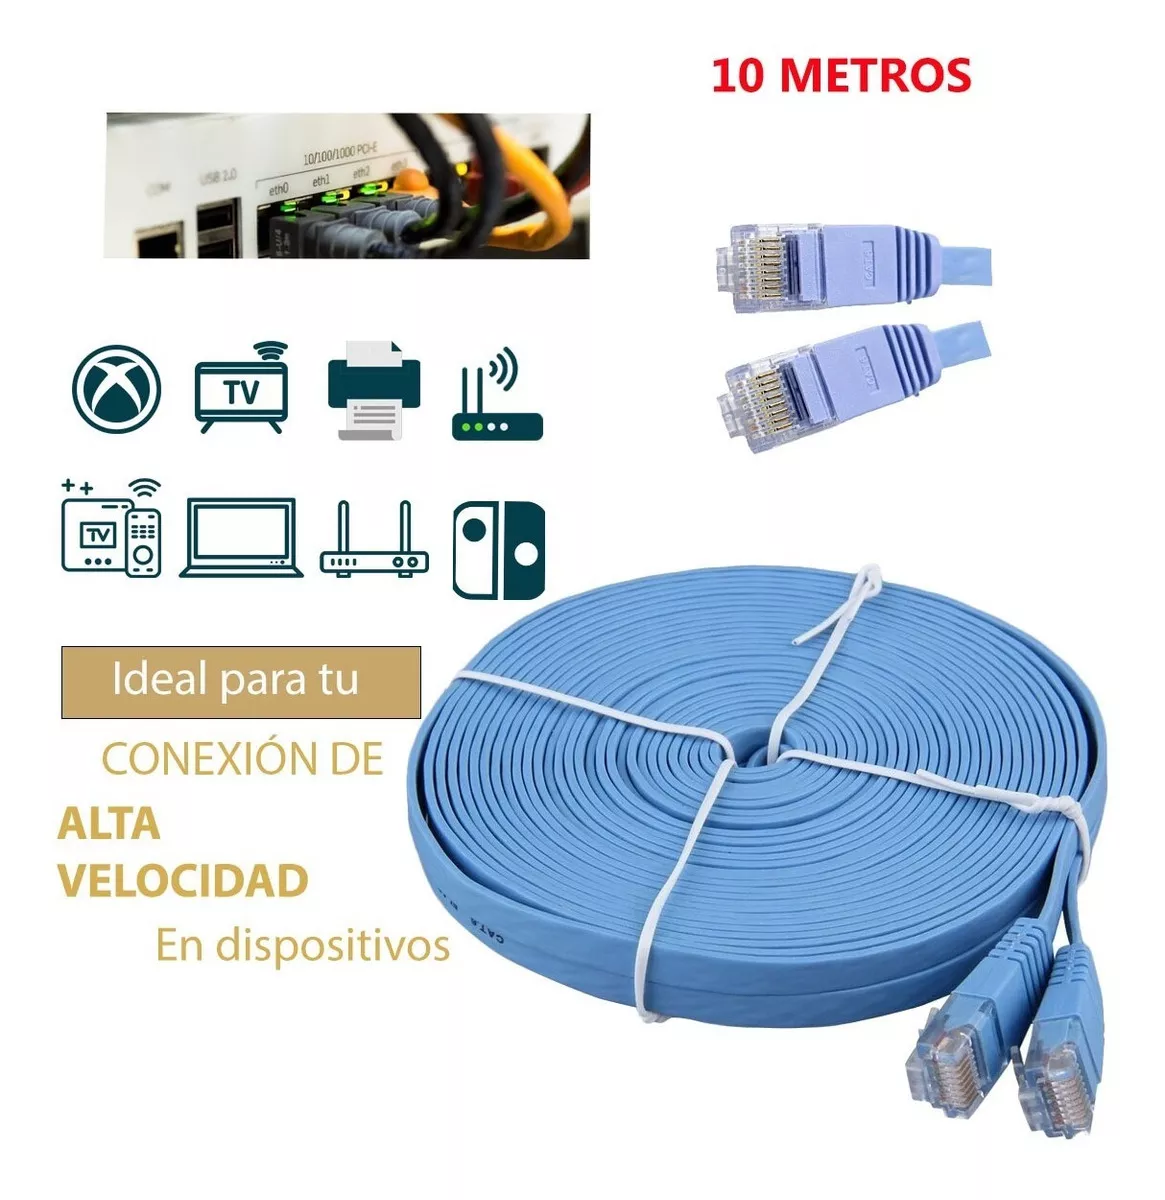 Tercera imagen para búsqueda de cable ethernet 10 metros